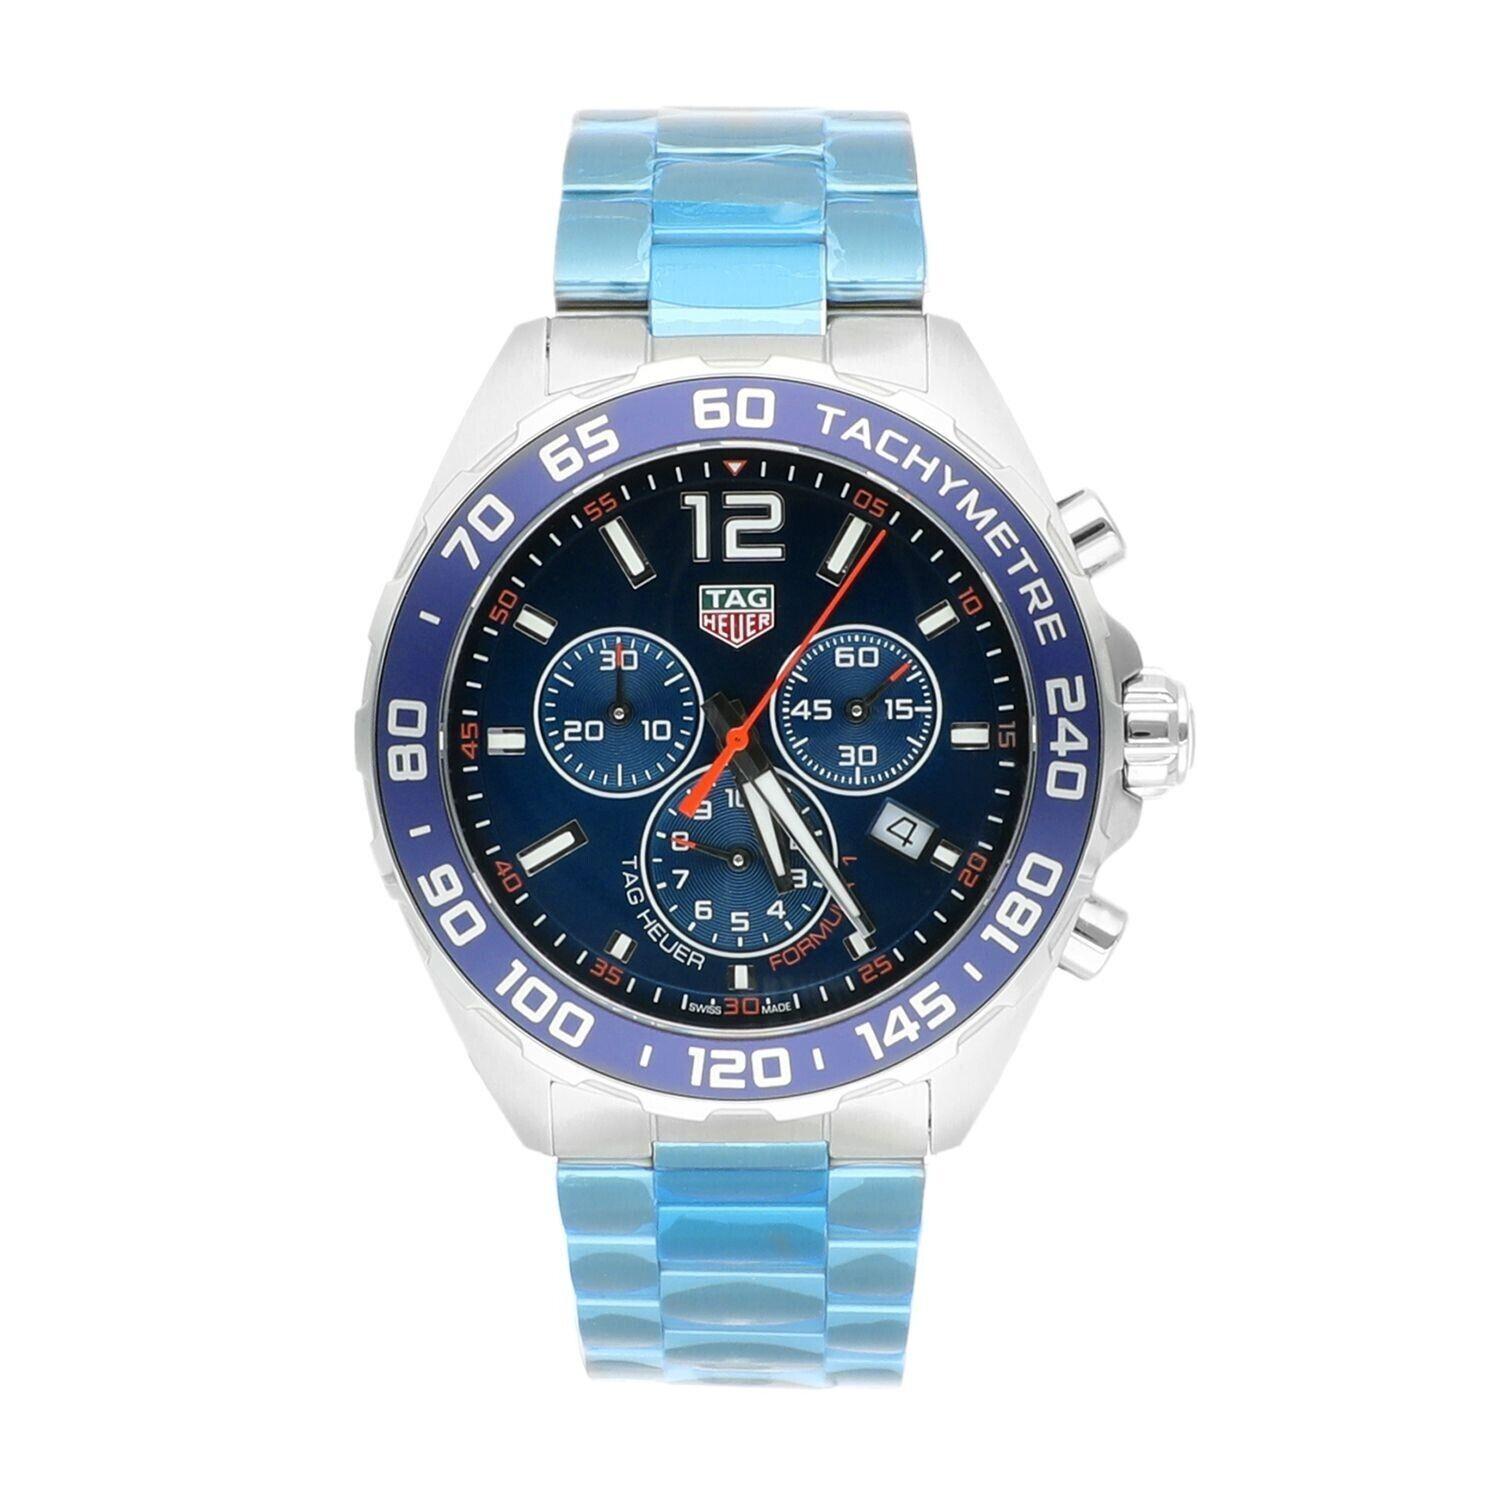 Reloj de caballero Tag Heuer Formula 1 Cronógrafo Esfera Azul CAZ1014.BA0842, Completo. 
Un cronógrafo de cuarzo versátil con esfera azul y escala taquimétrica inspirado en el circuito automovilístico más prestigioso del mundo. Se utilizan